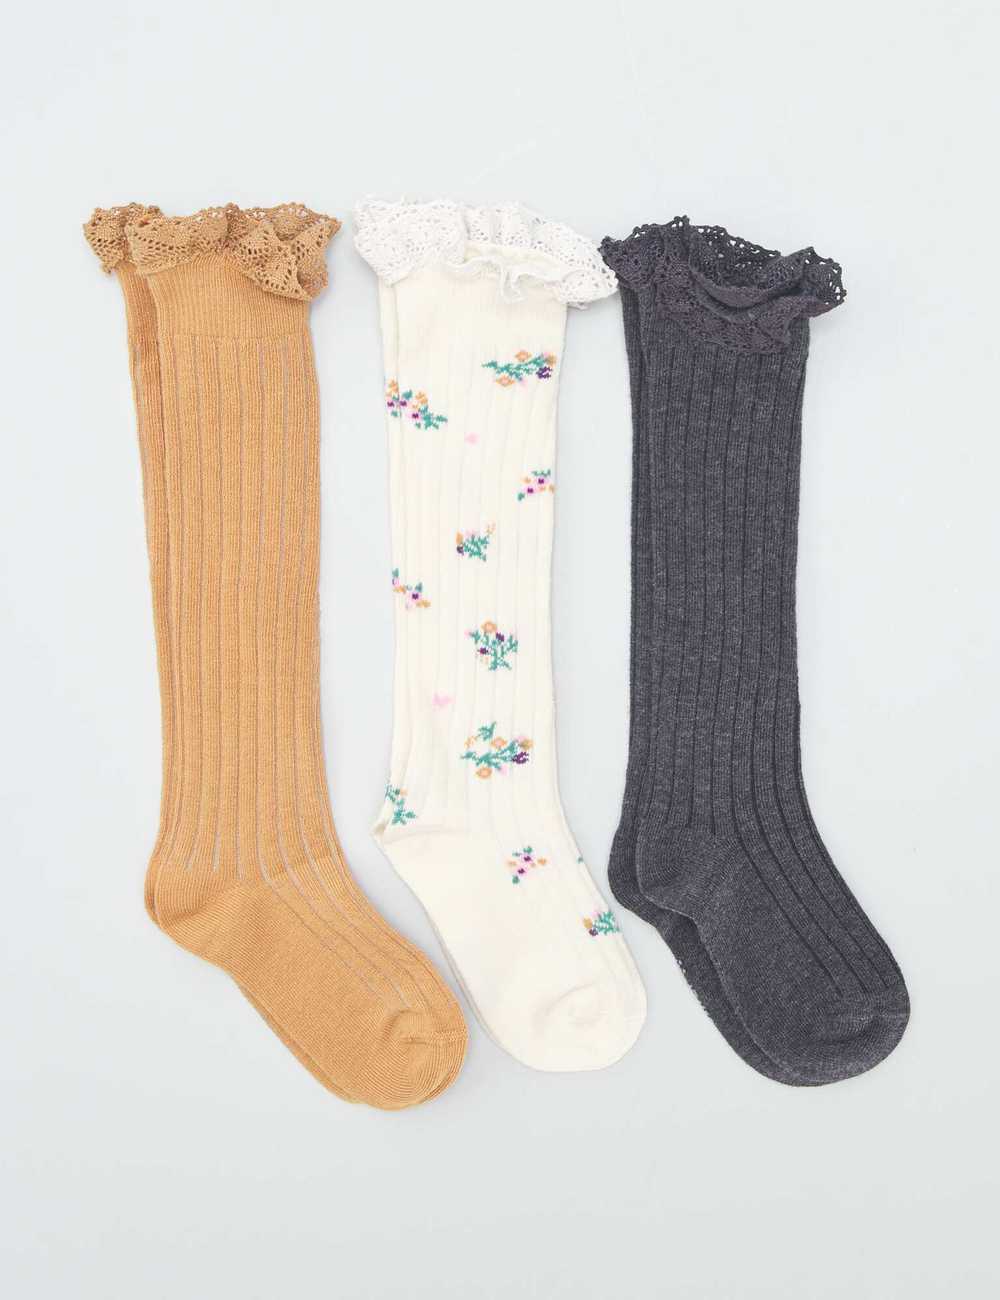 Buy Pack of 3 pairs of ribbed long socks Online in Dubai & the UAE